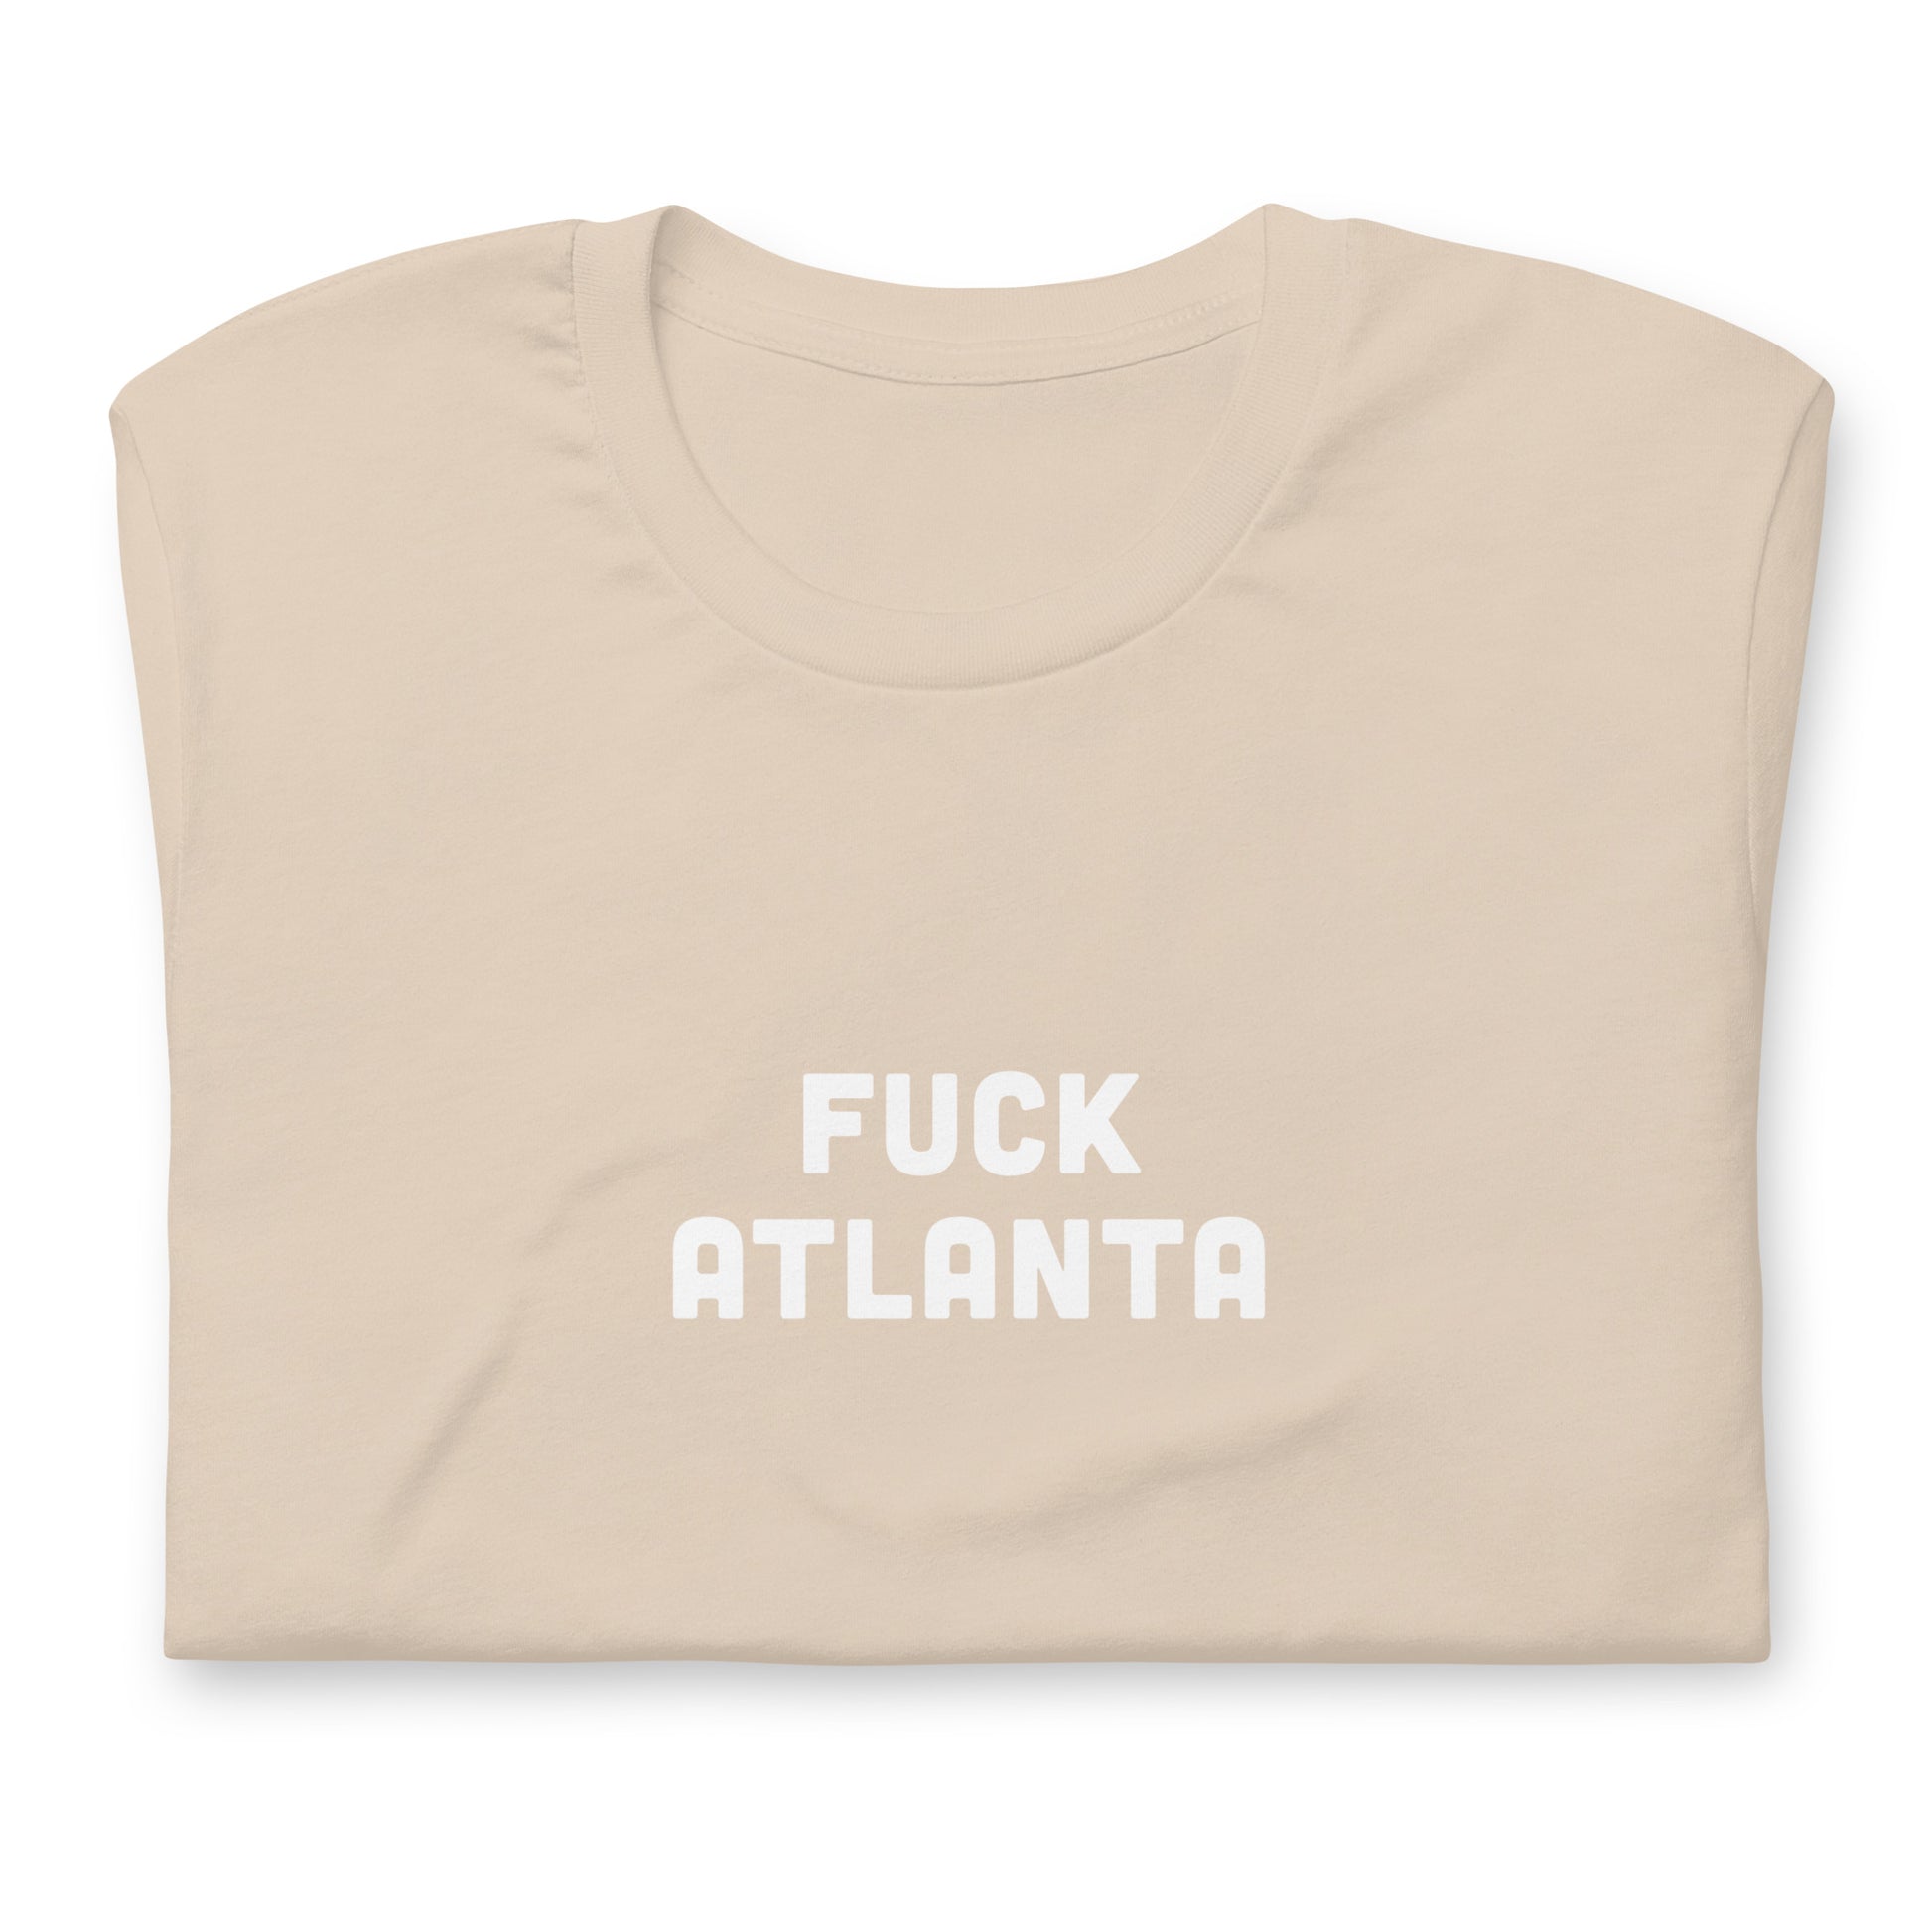 Fuck Atlanta T-Shirt Size XL Color Asphalt